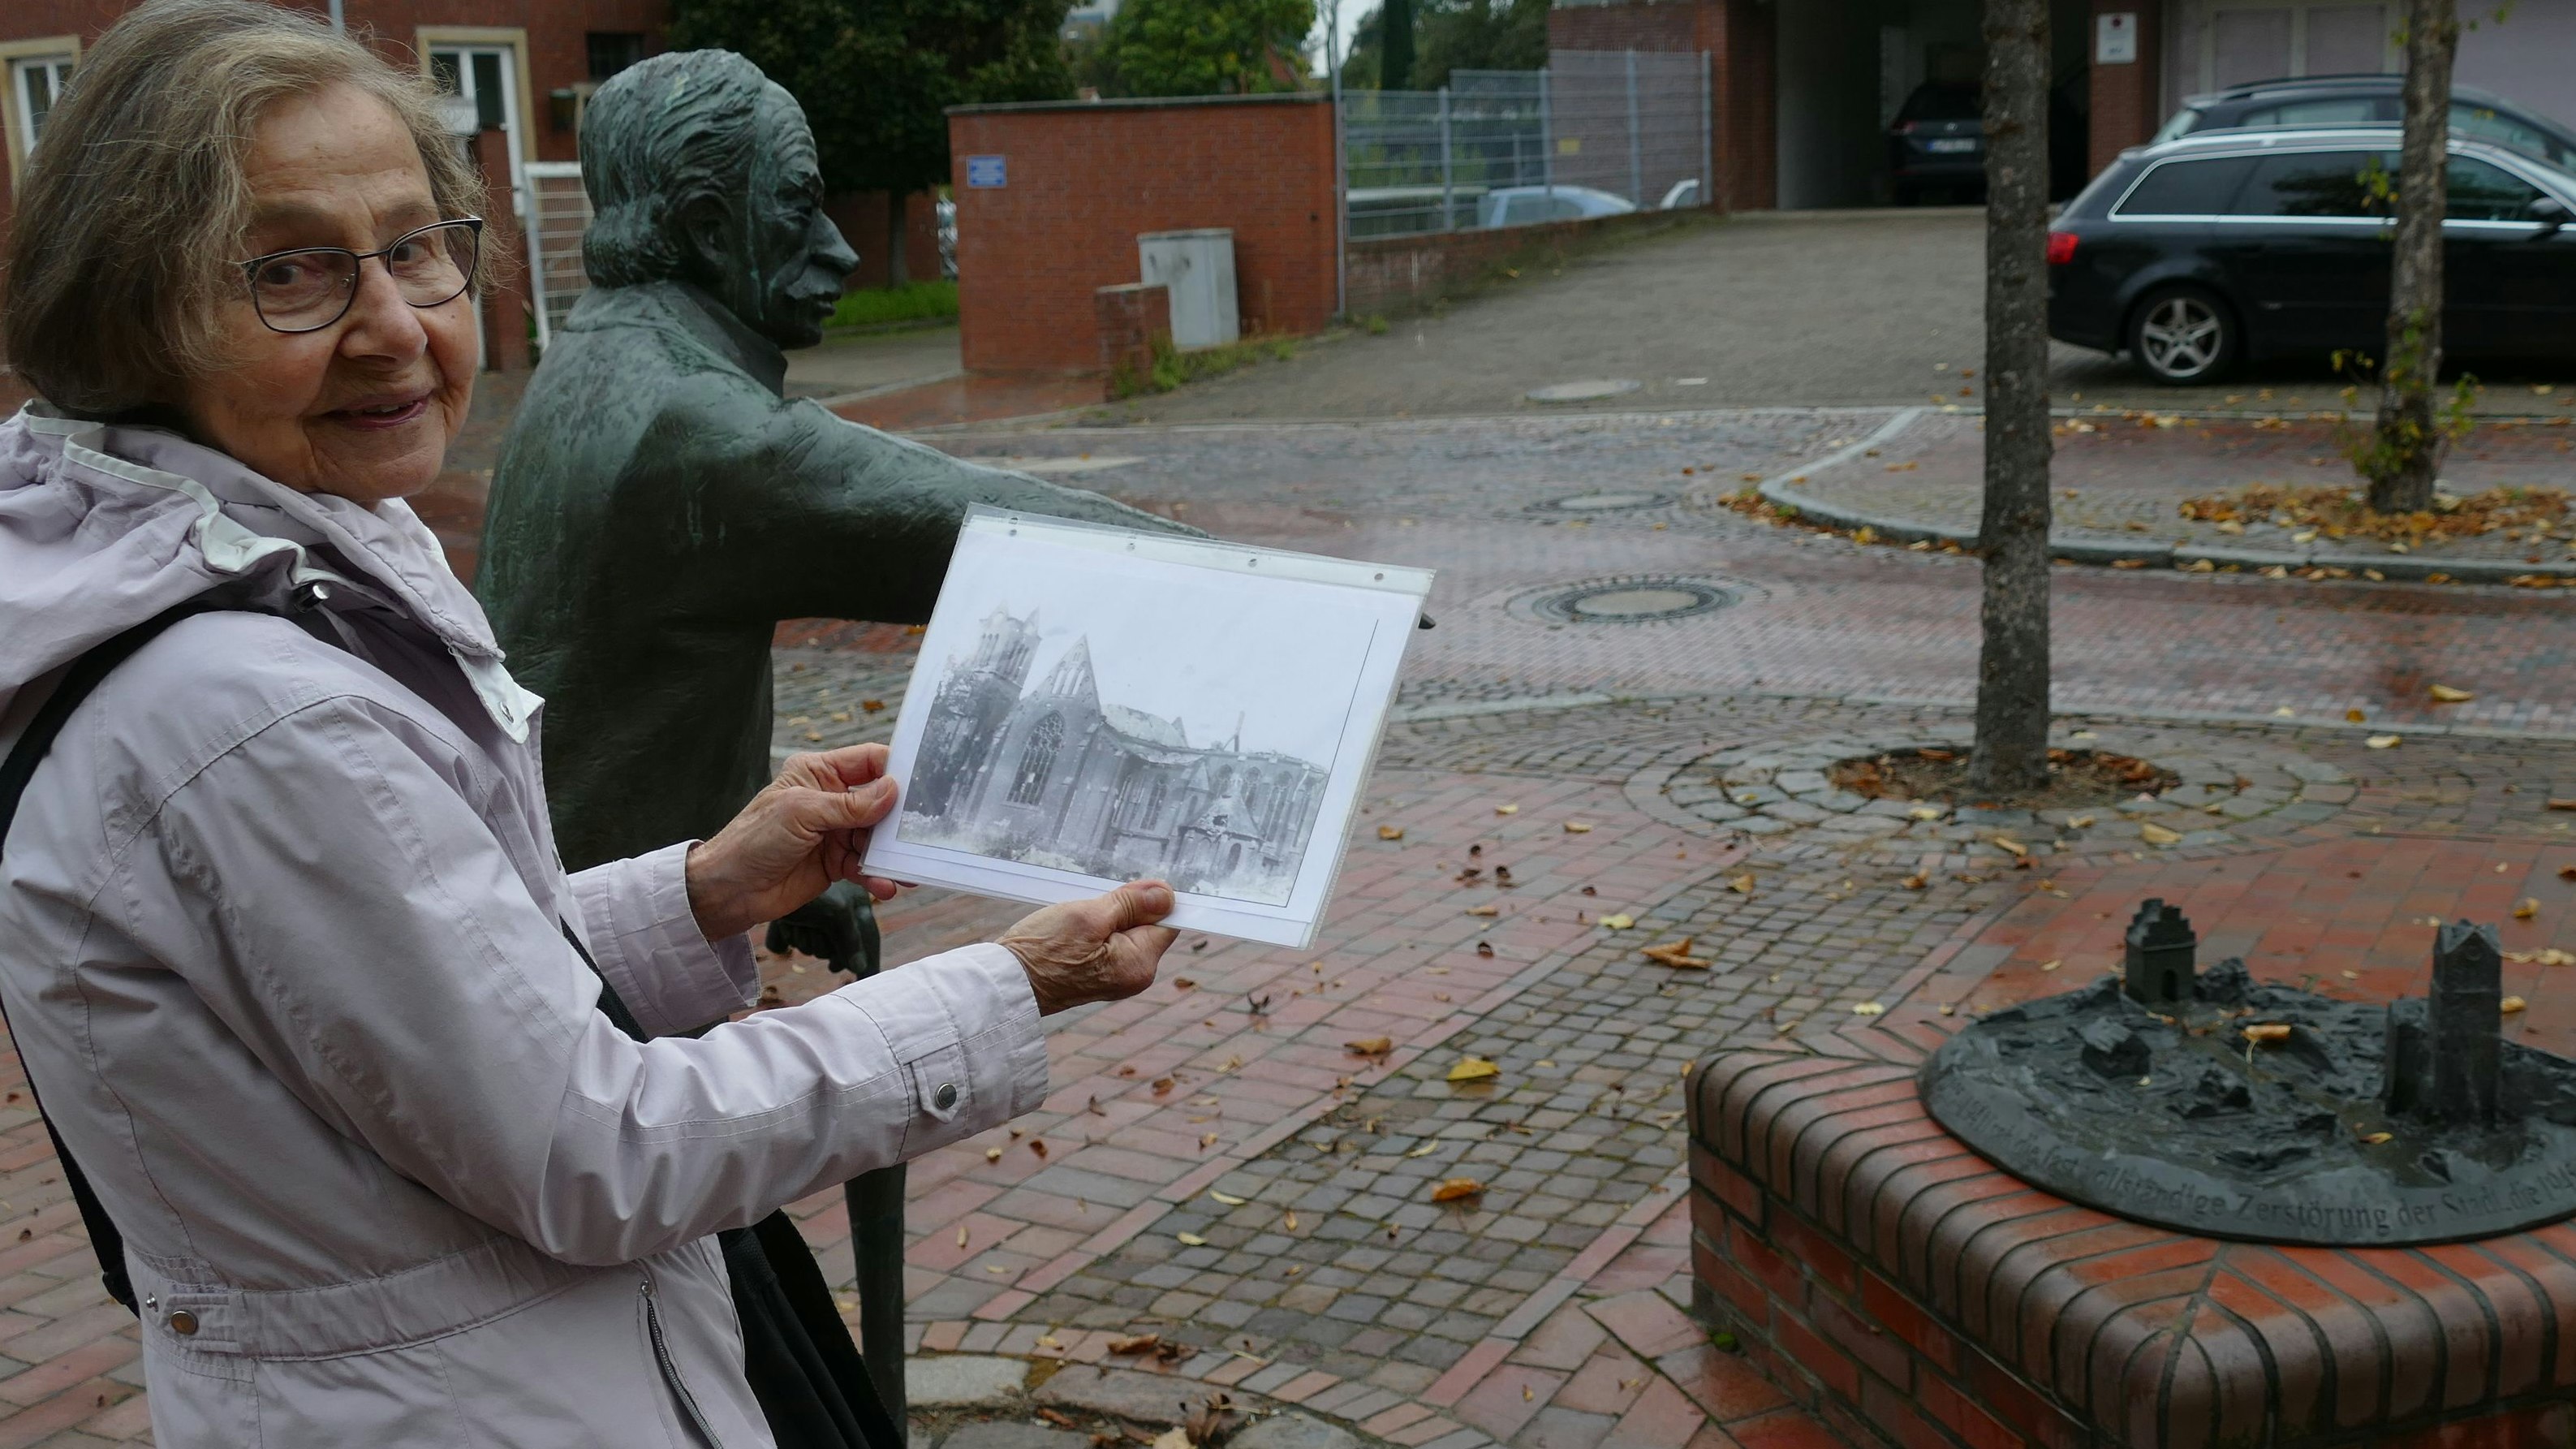 Oft im Programm: An der Bronzefigur des Stadtschreibers Wreesmann erläutert Gästeführerin Roswitha Krause die Zerstörung der Stadt im Zweiten Weltkrieg. Foto: Stix